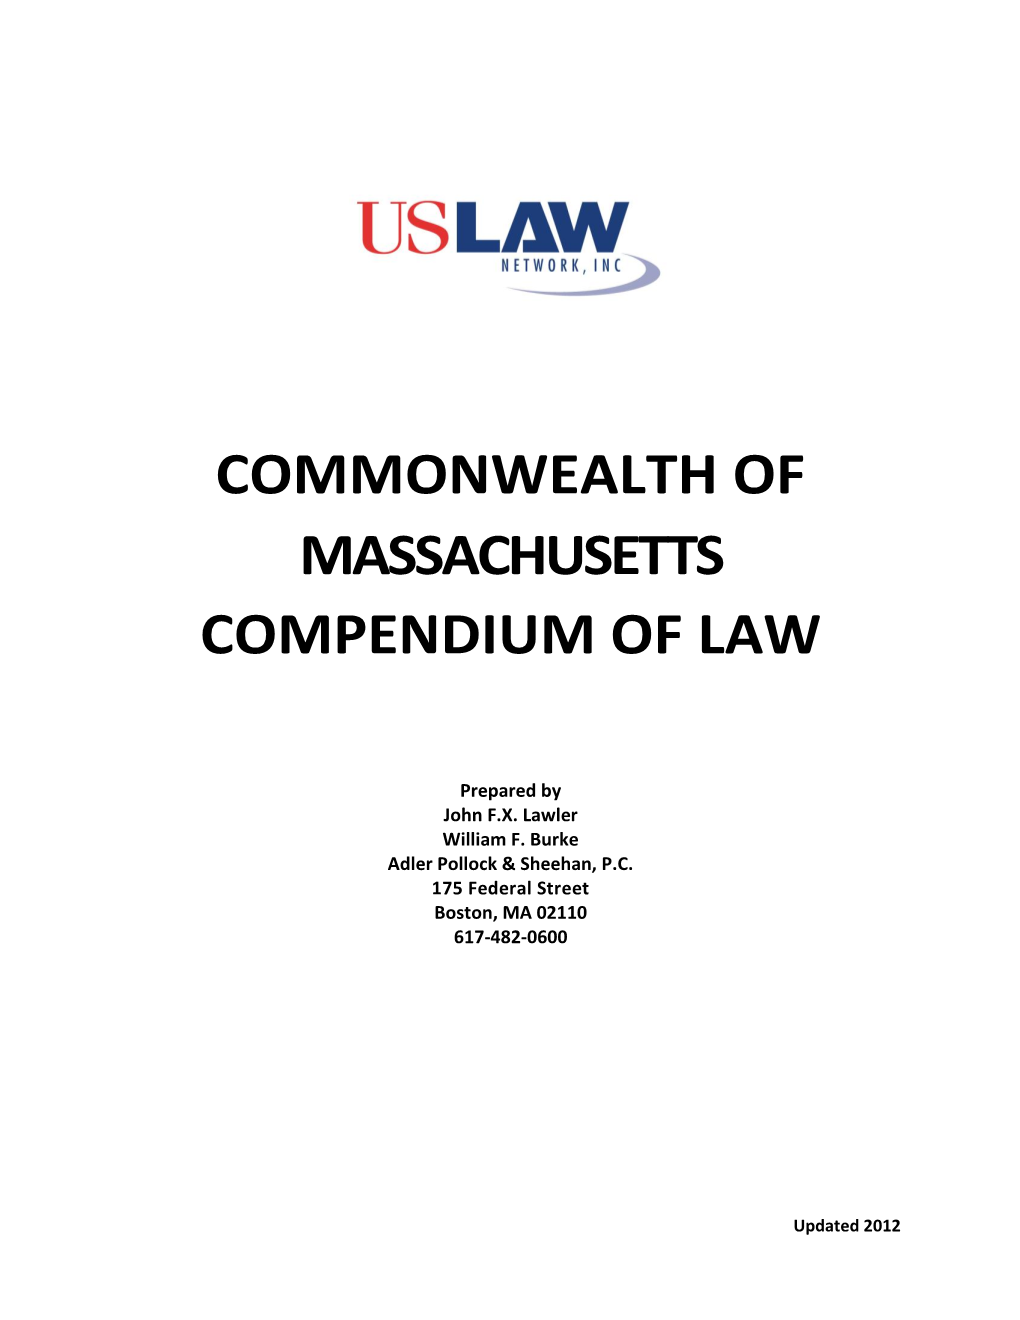 Massachusetts Compendium of Law